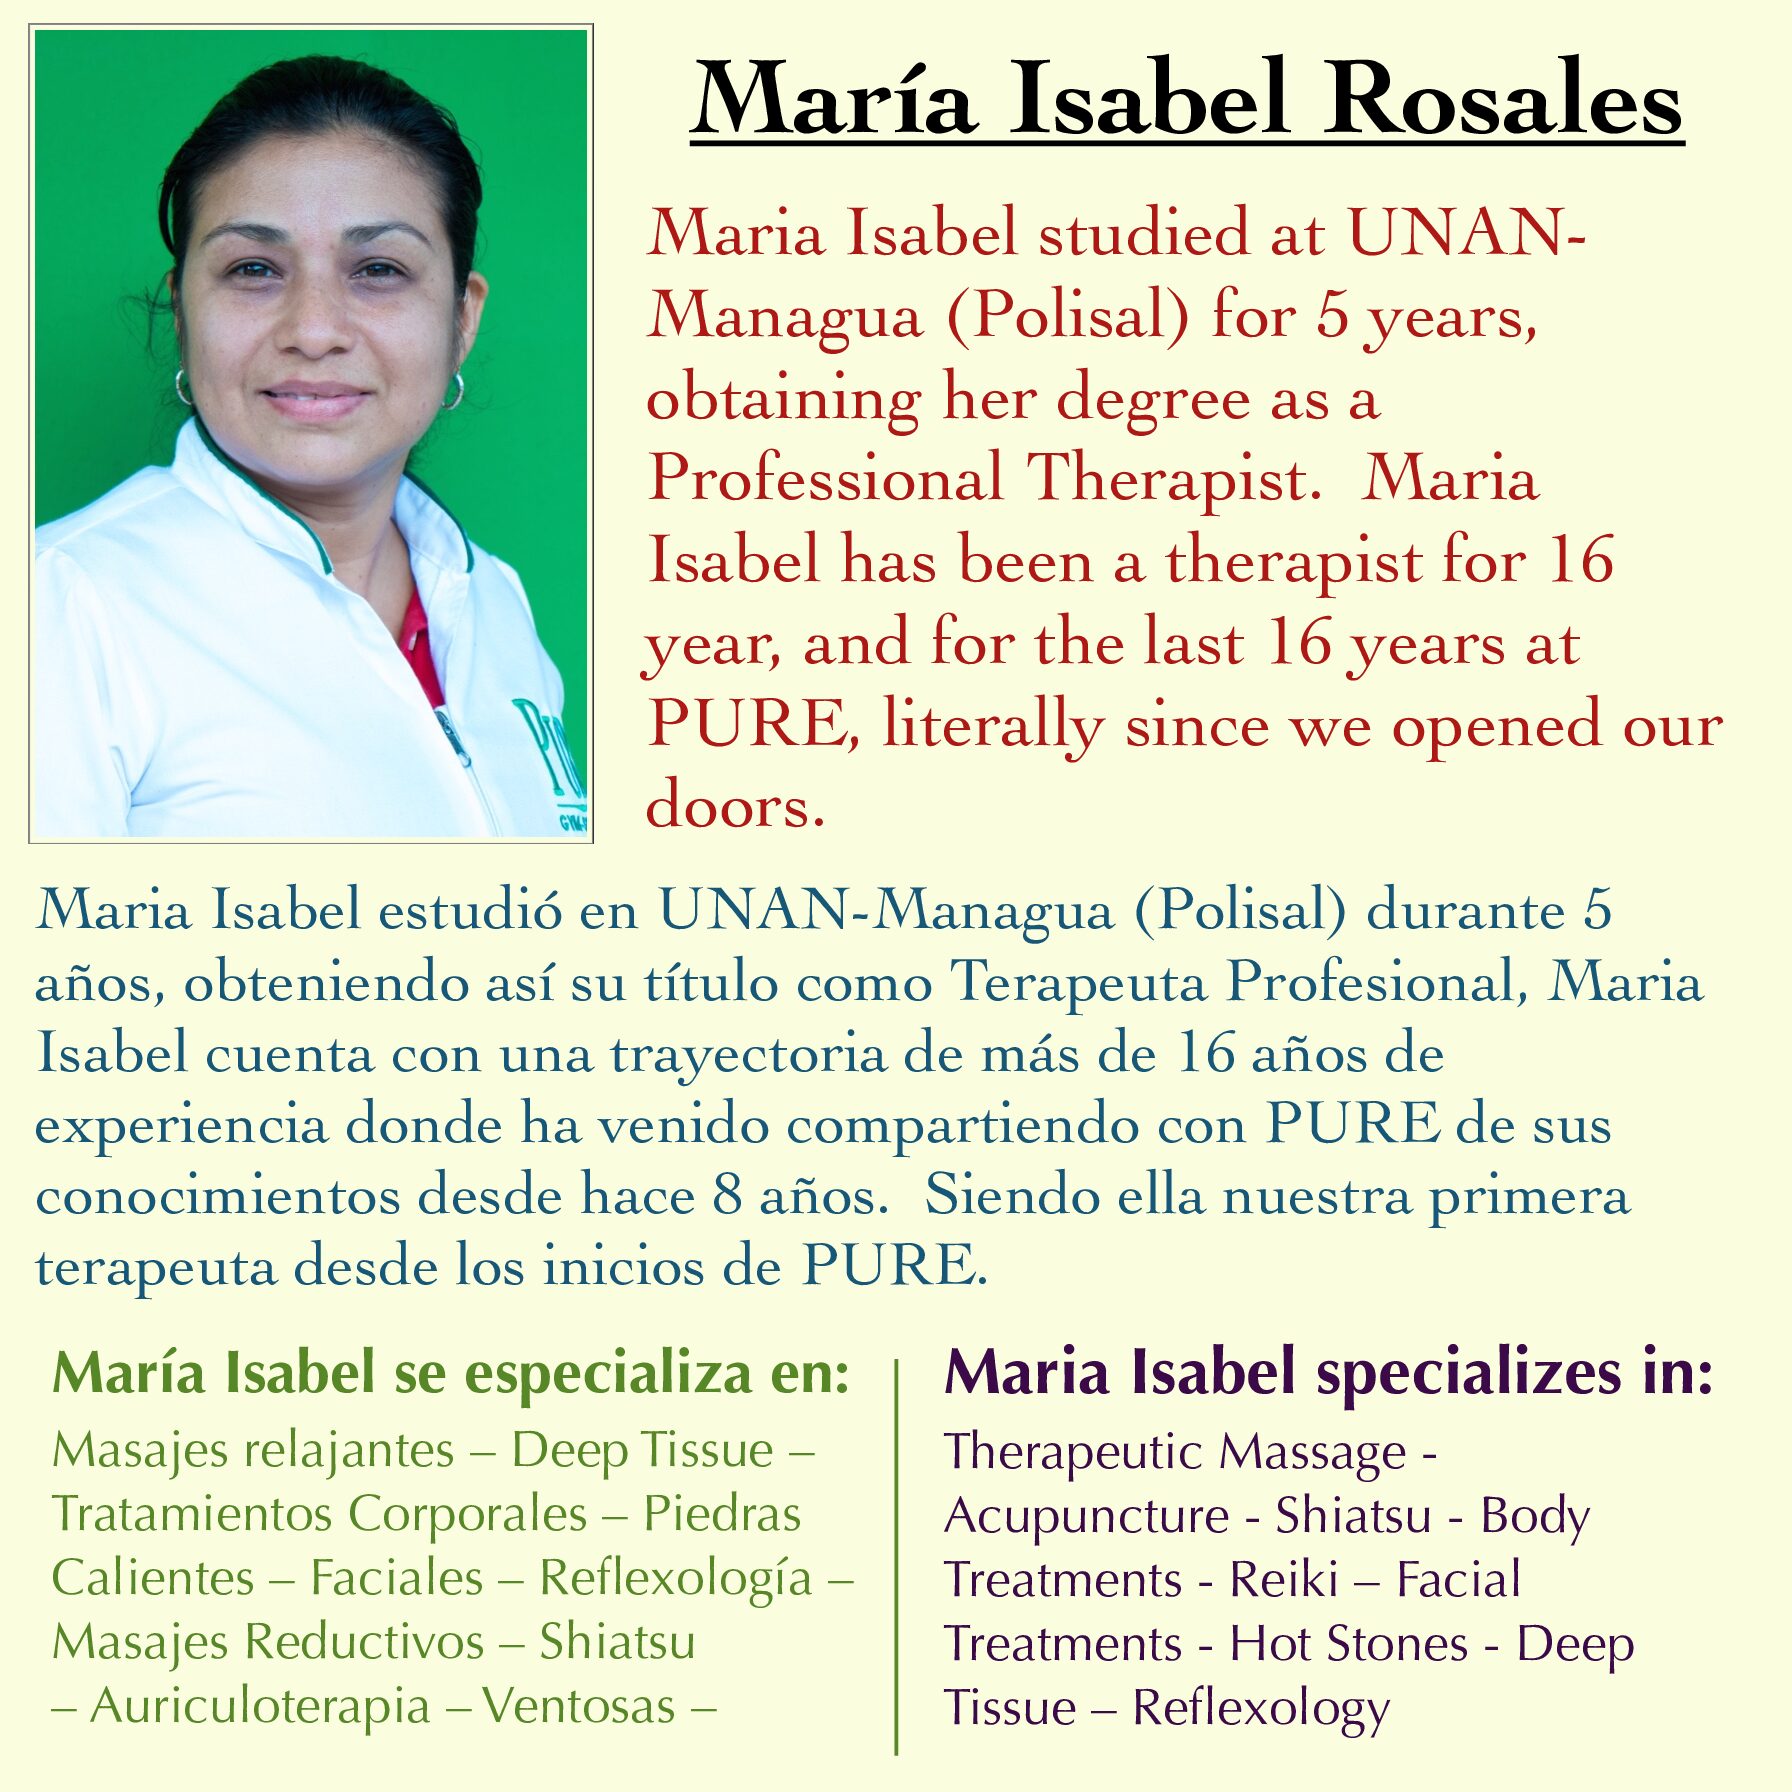 Maria Isabel Rosales